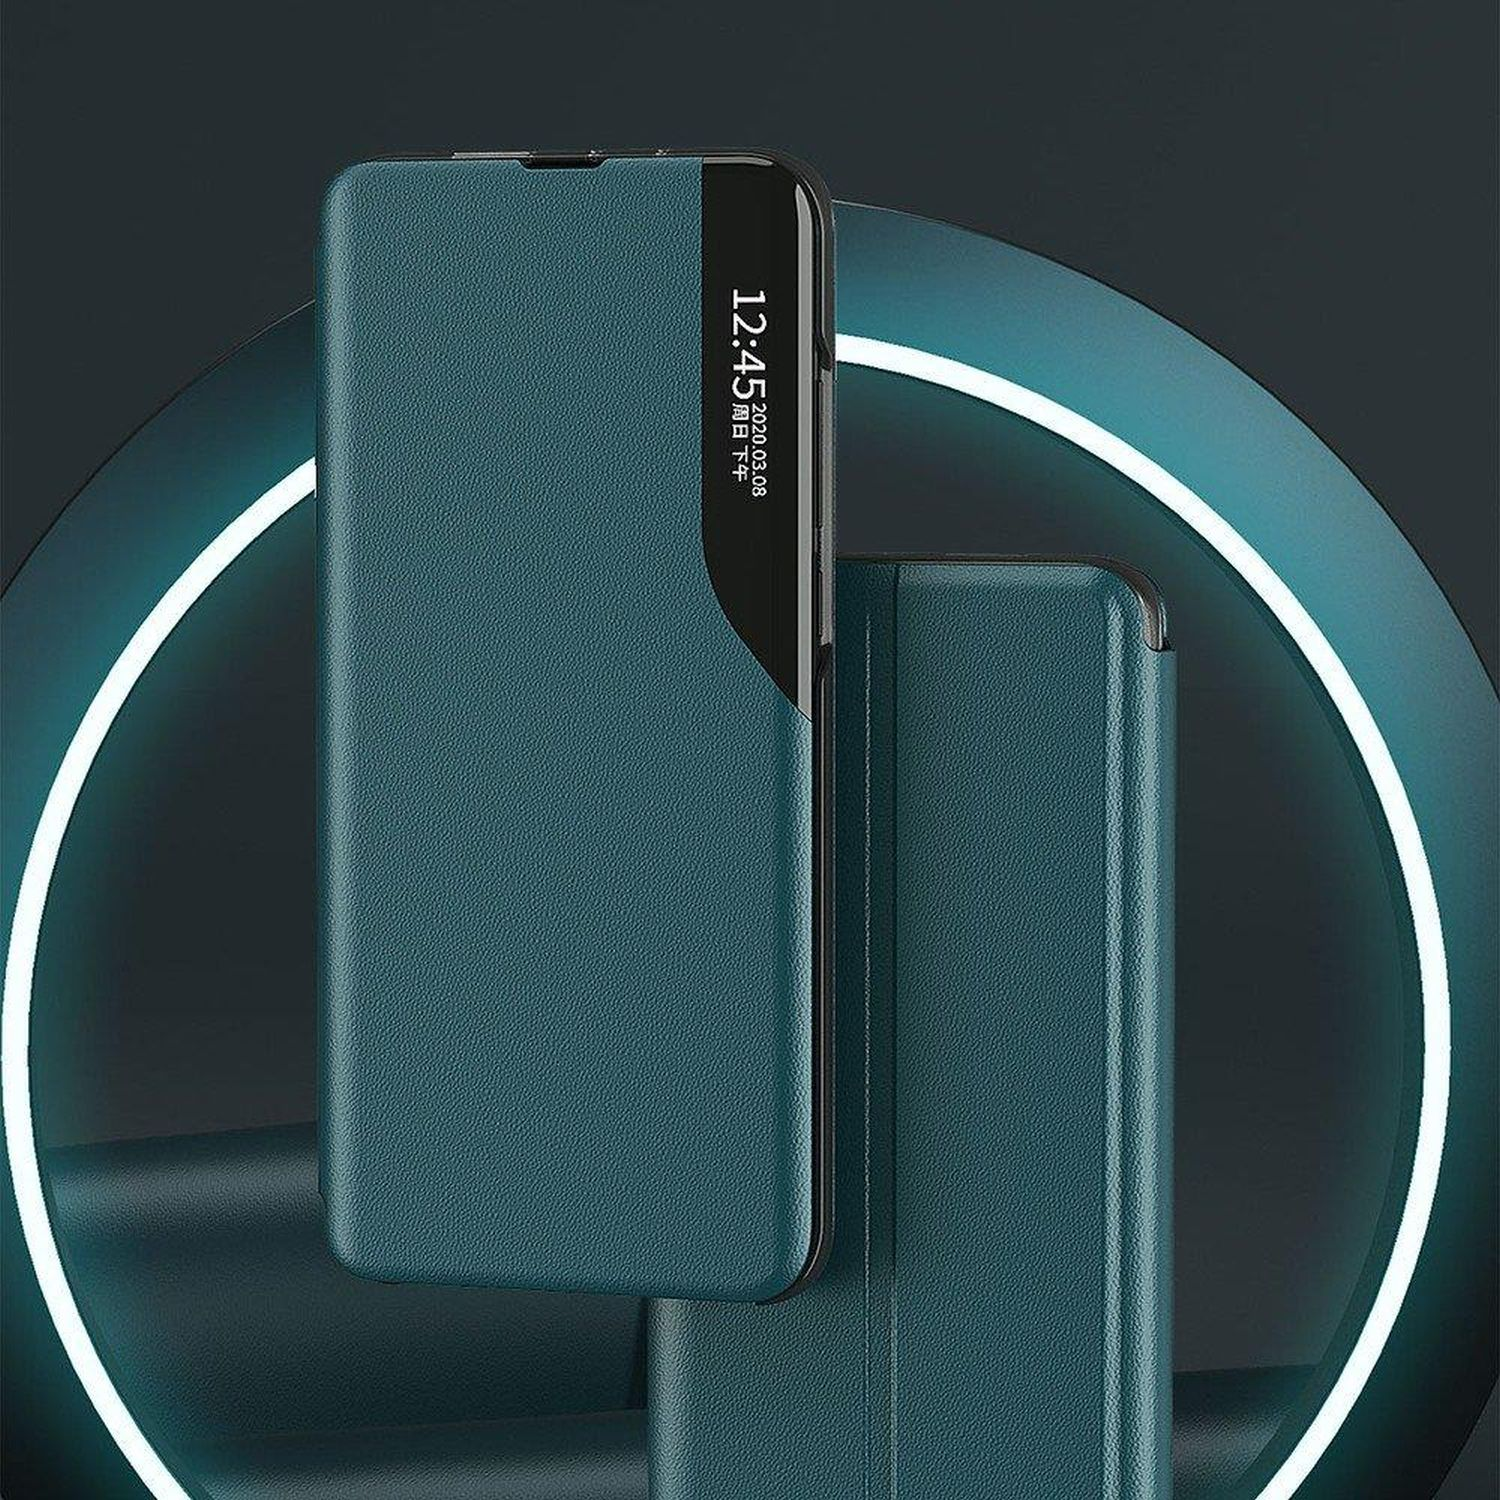 P30 Orange Pro, Huawei, View COFI Smart Case, Bookcover,